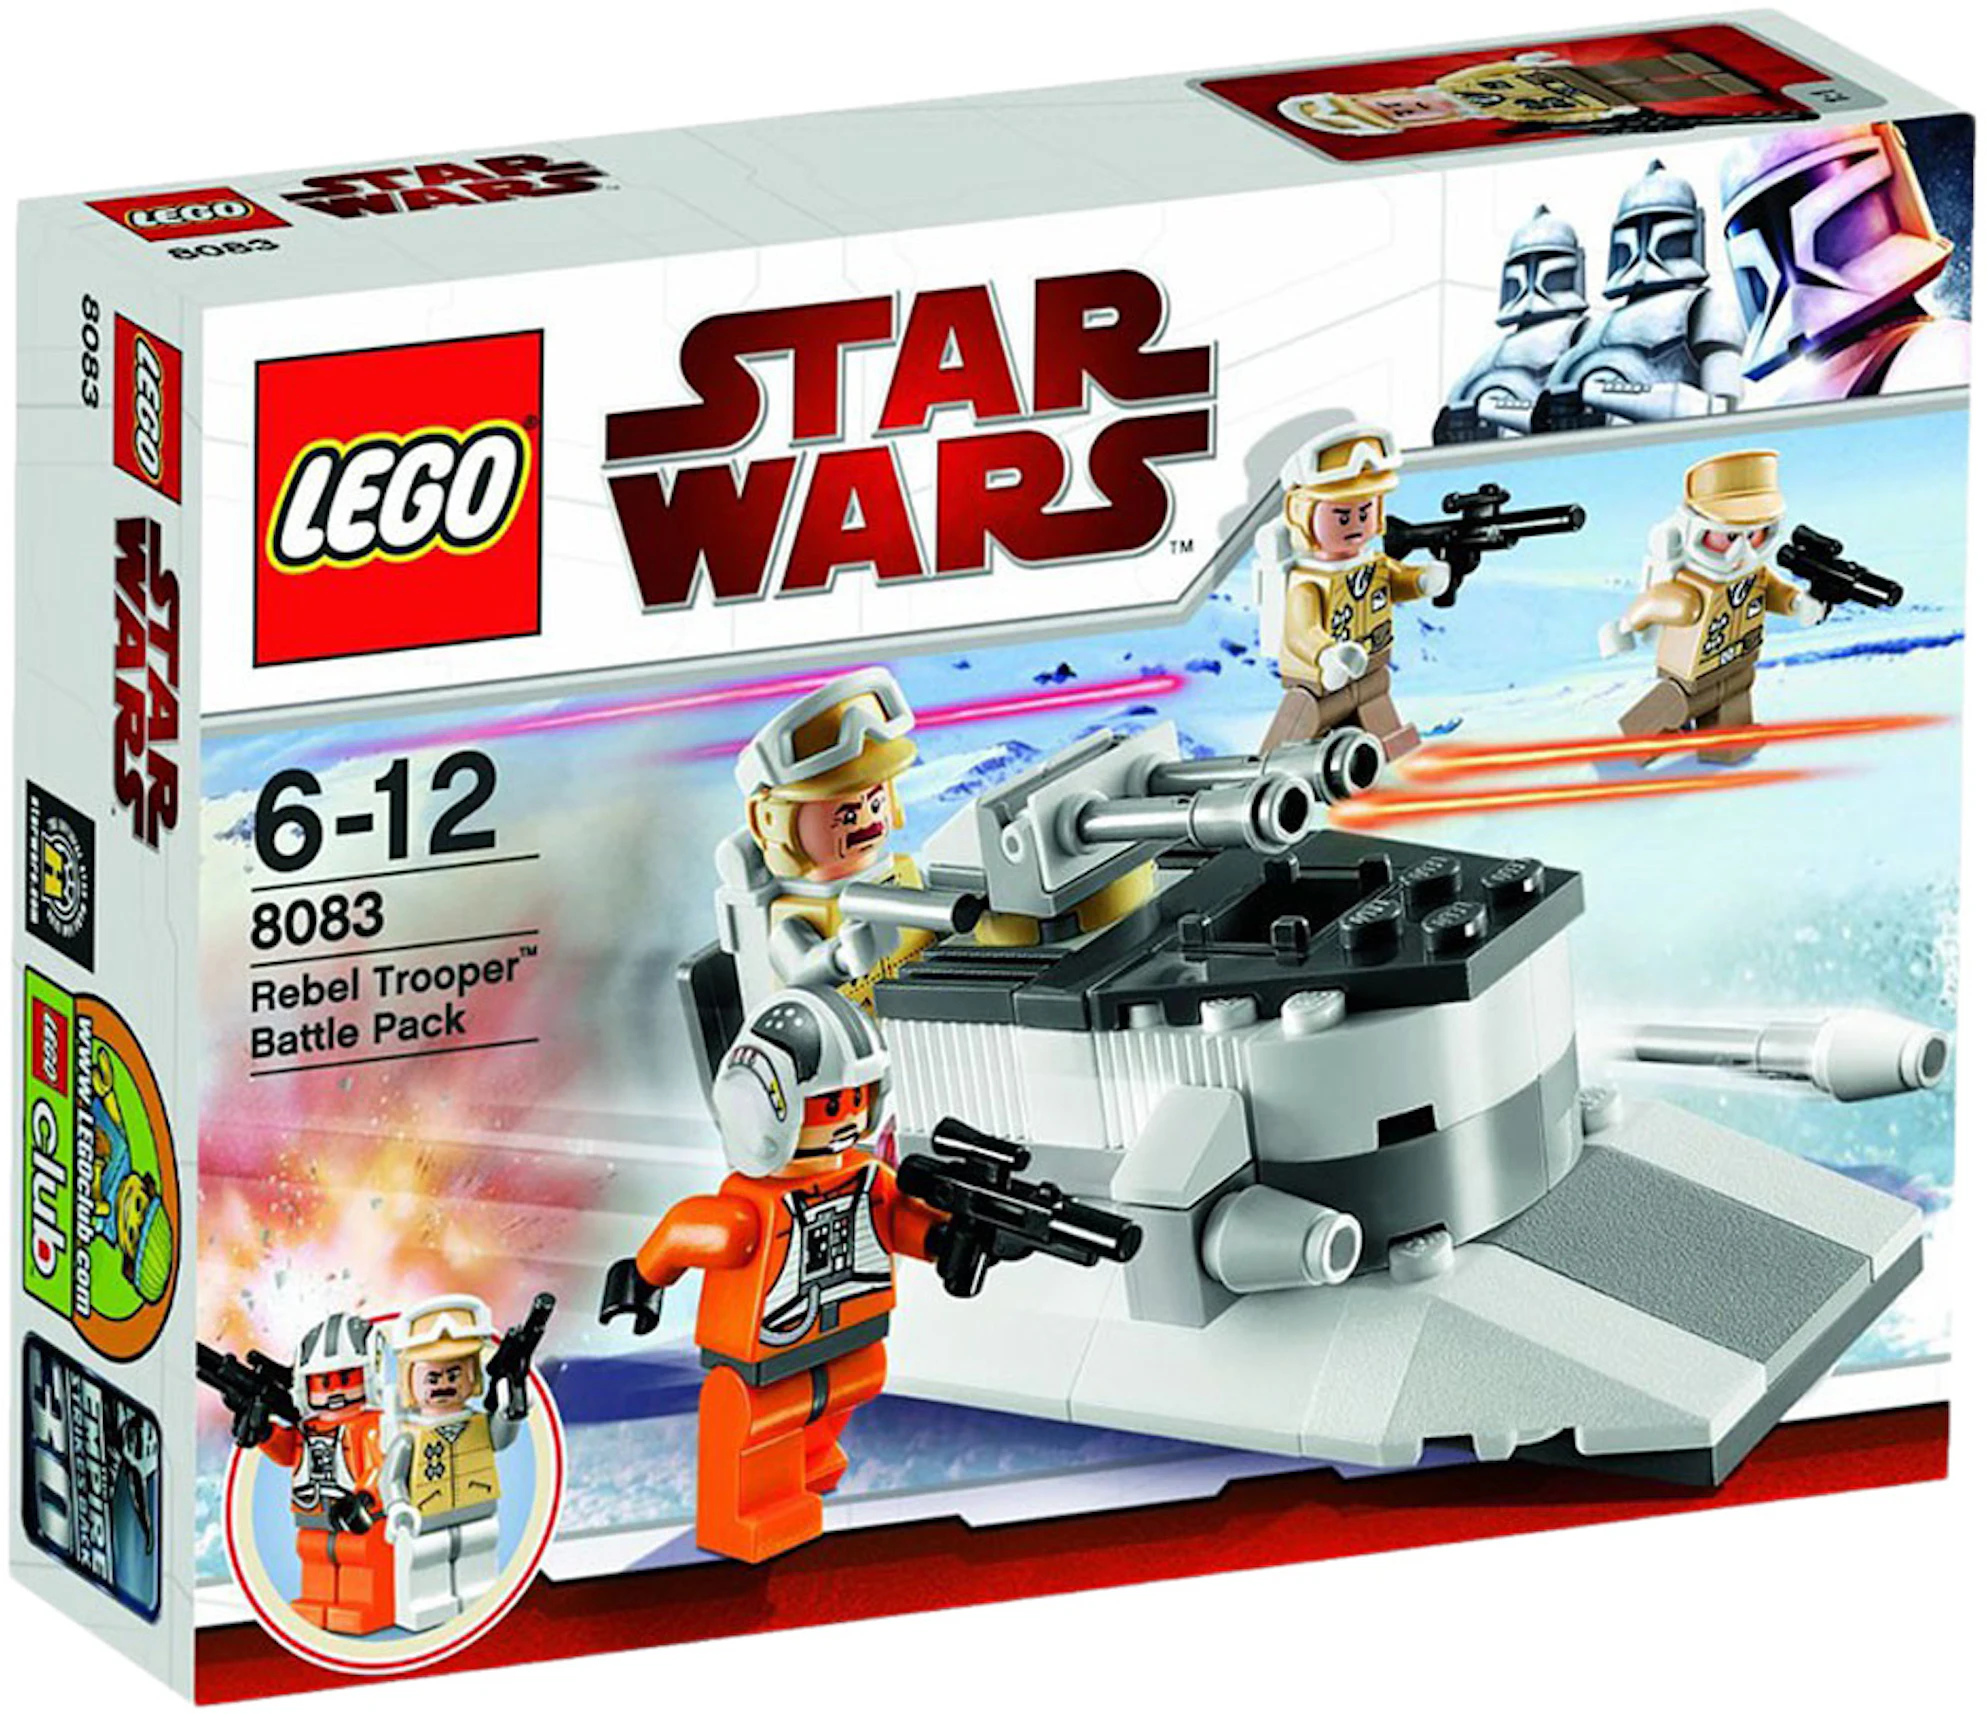 Troosteloos stap in inhalen LEGO Star Wars The Empire Strikes Back Rebel Trooper Army Pack Set 8083 - US